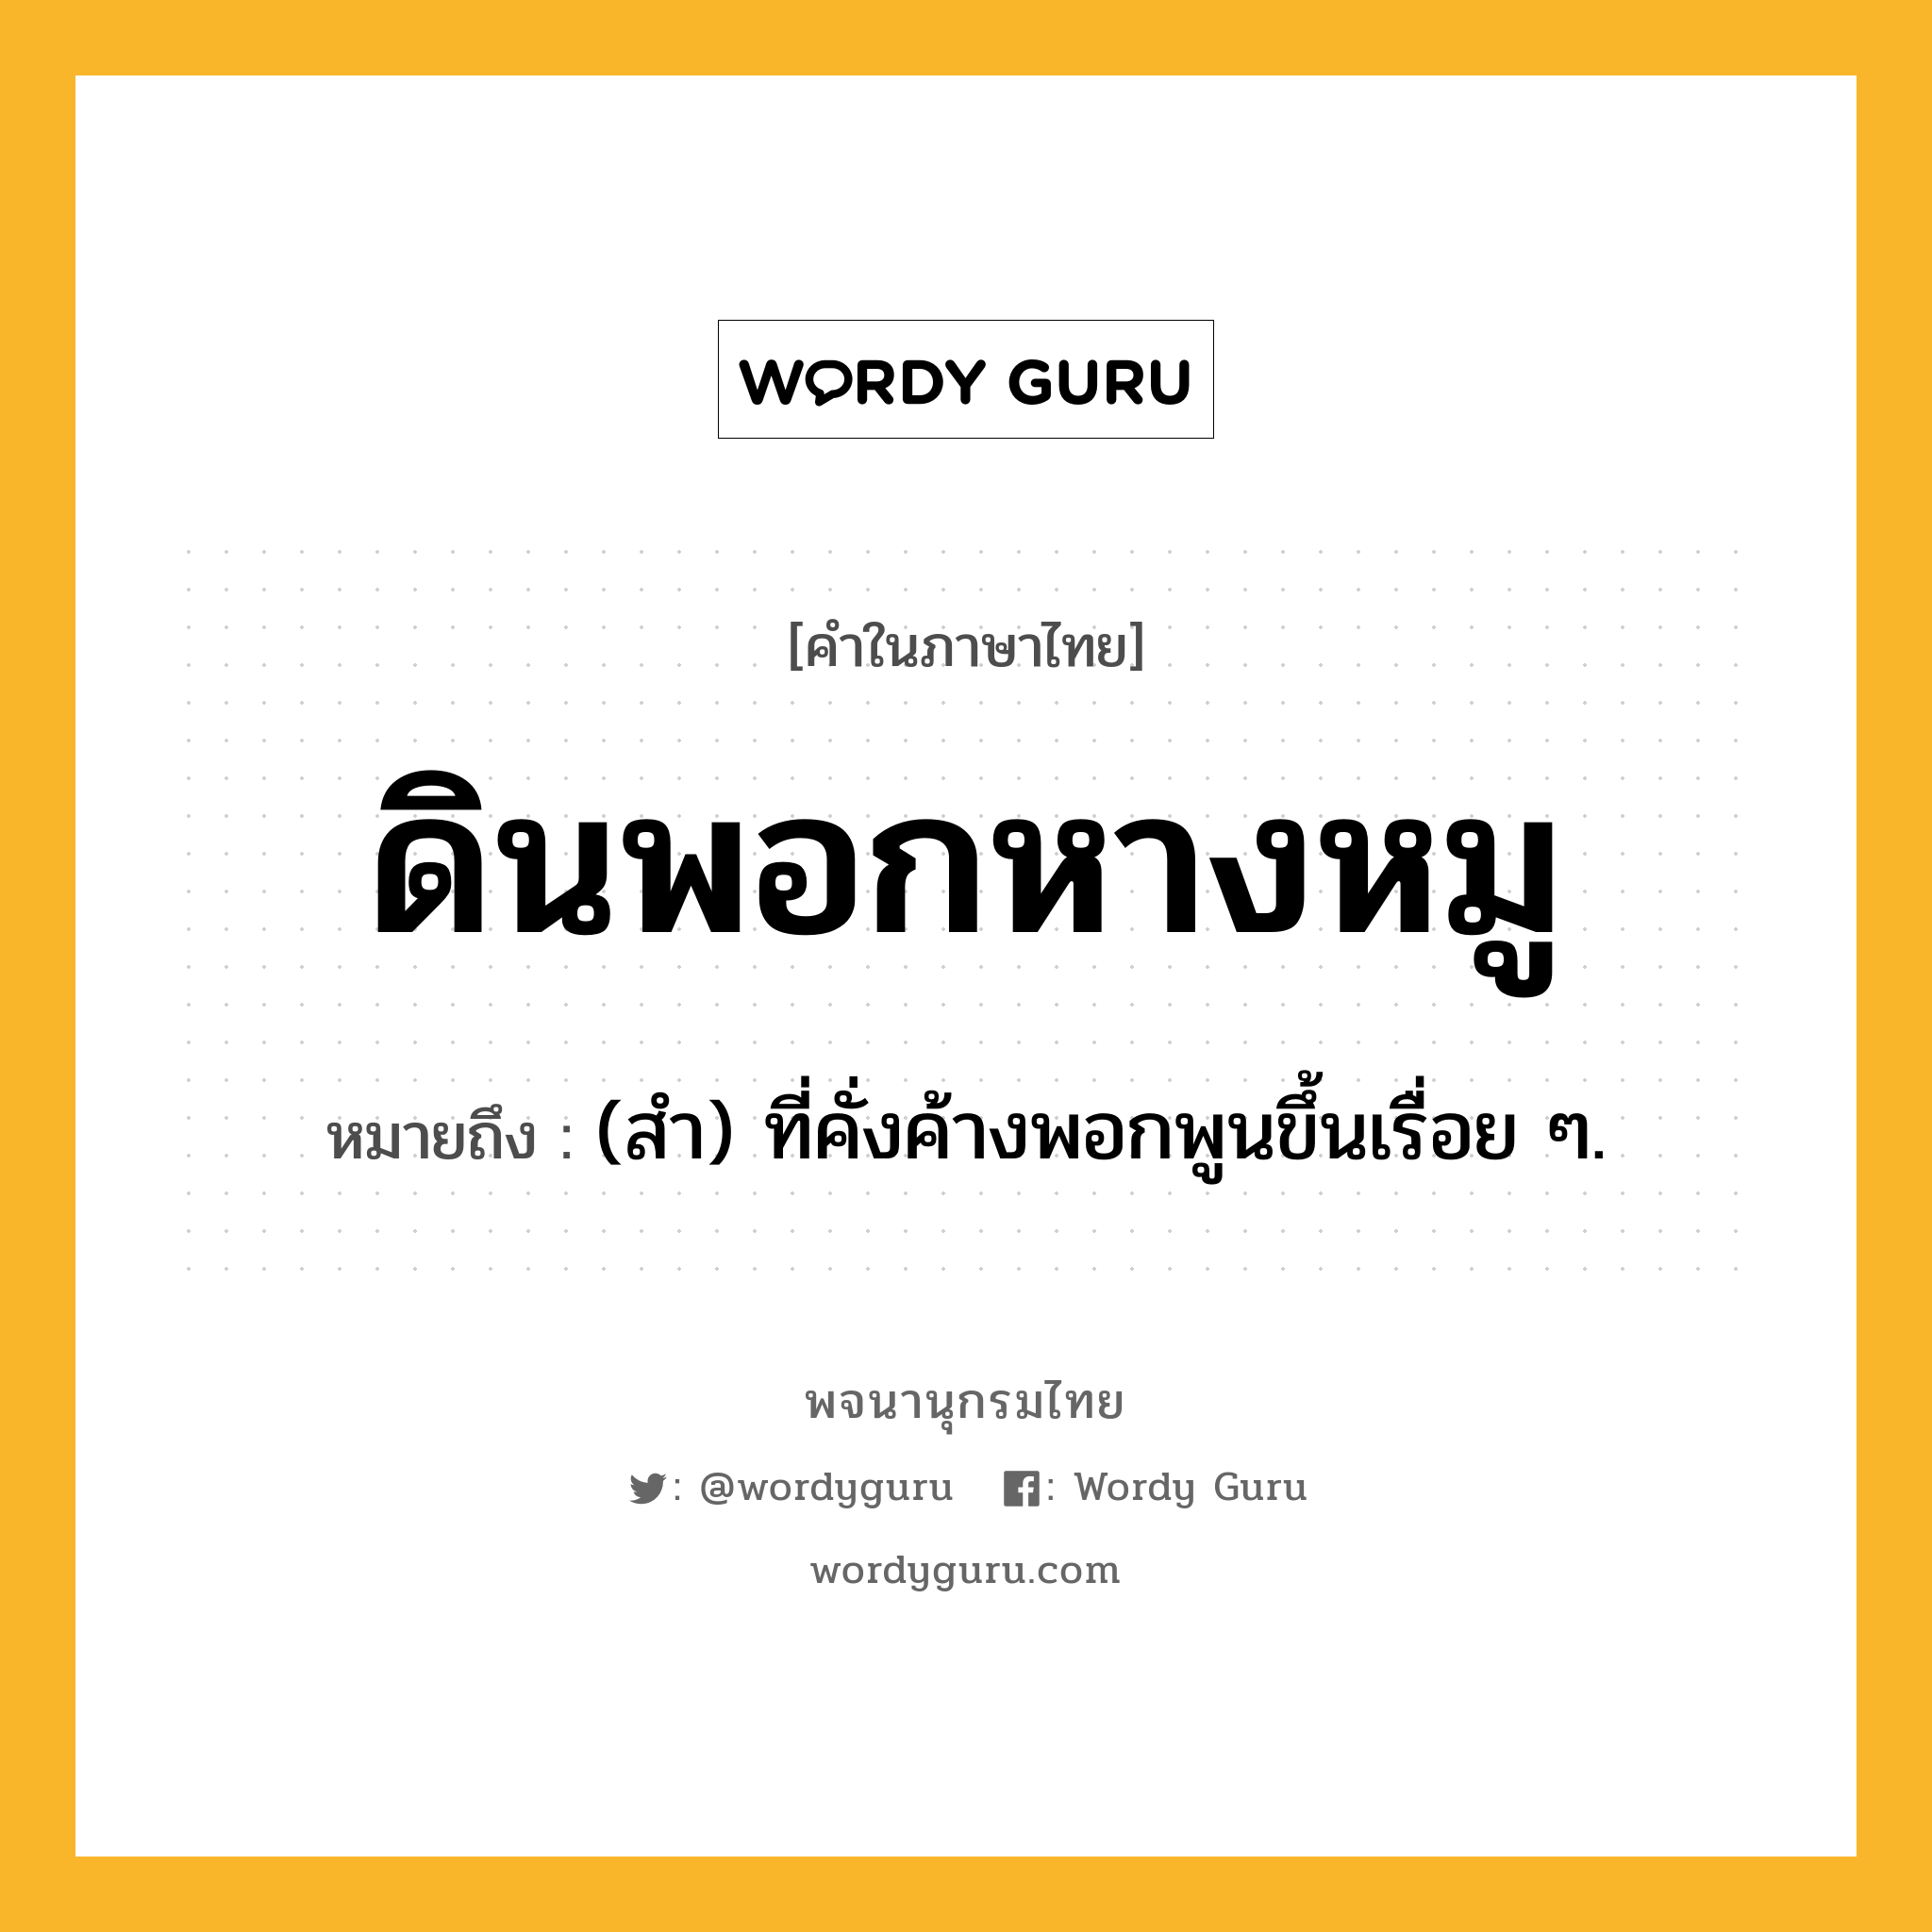 ดินพอกหางหมู หมายถึงอะไร?, คำในภาษาไทย ดินพอกหางหมู หมายถึง (สํา) ที่คั่งค้างพอกพูนขึ้นเรื่อย ๆ.